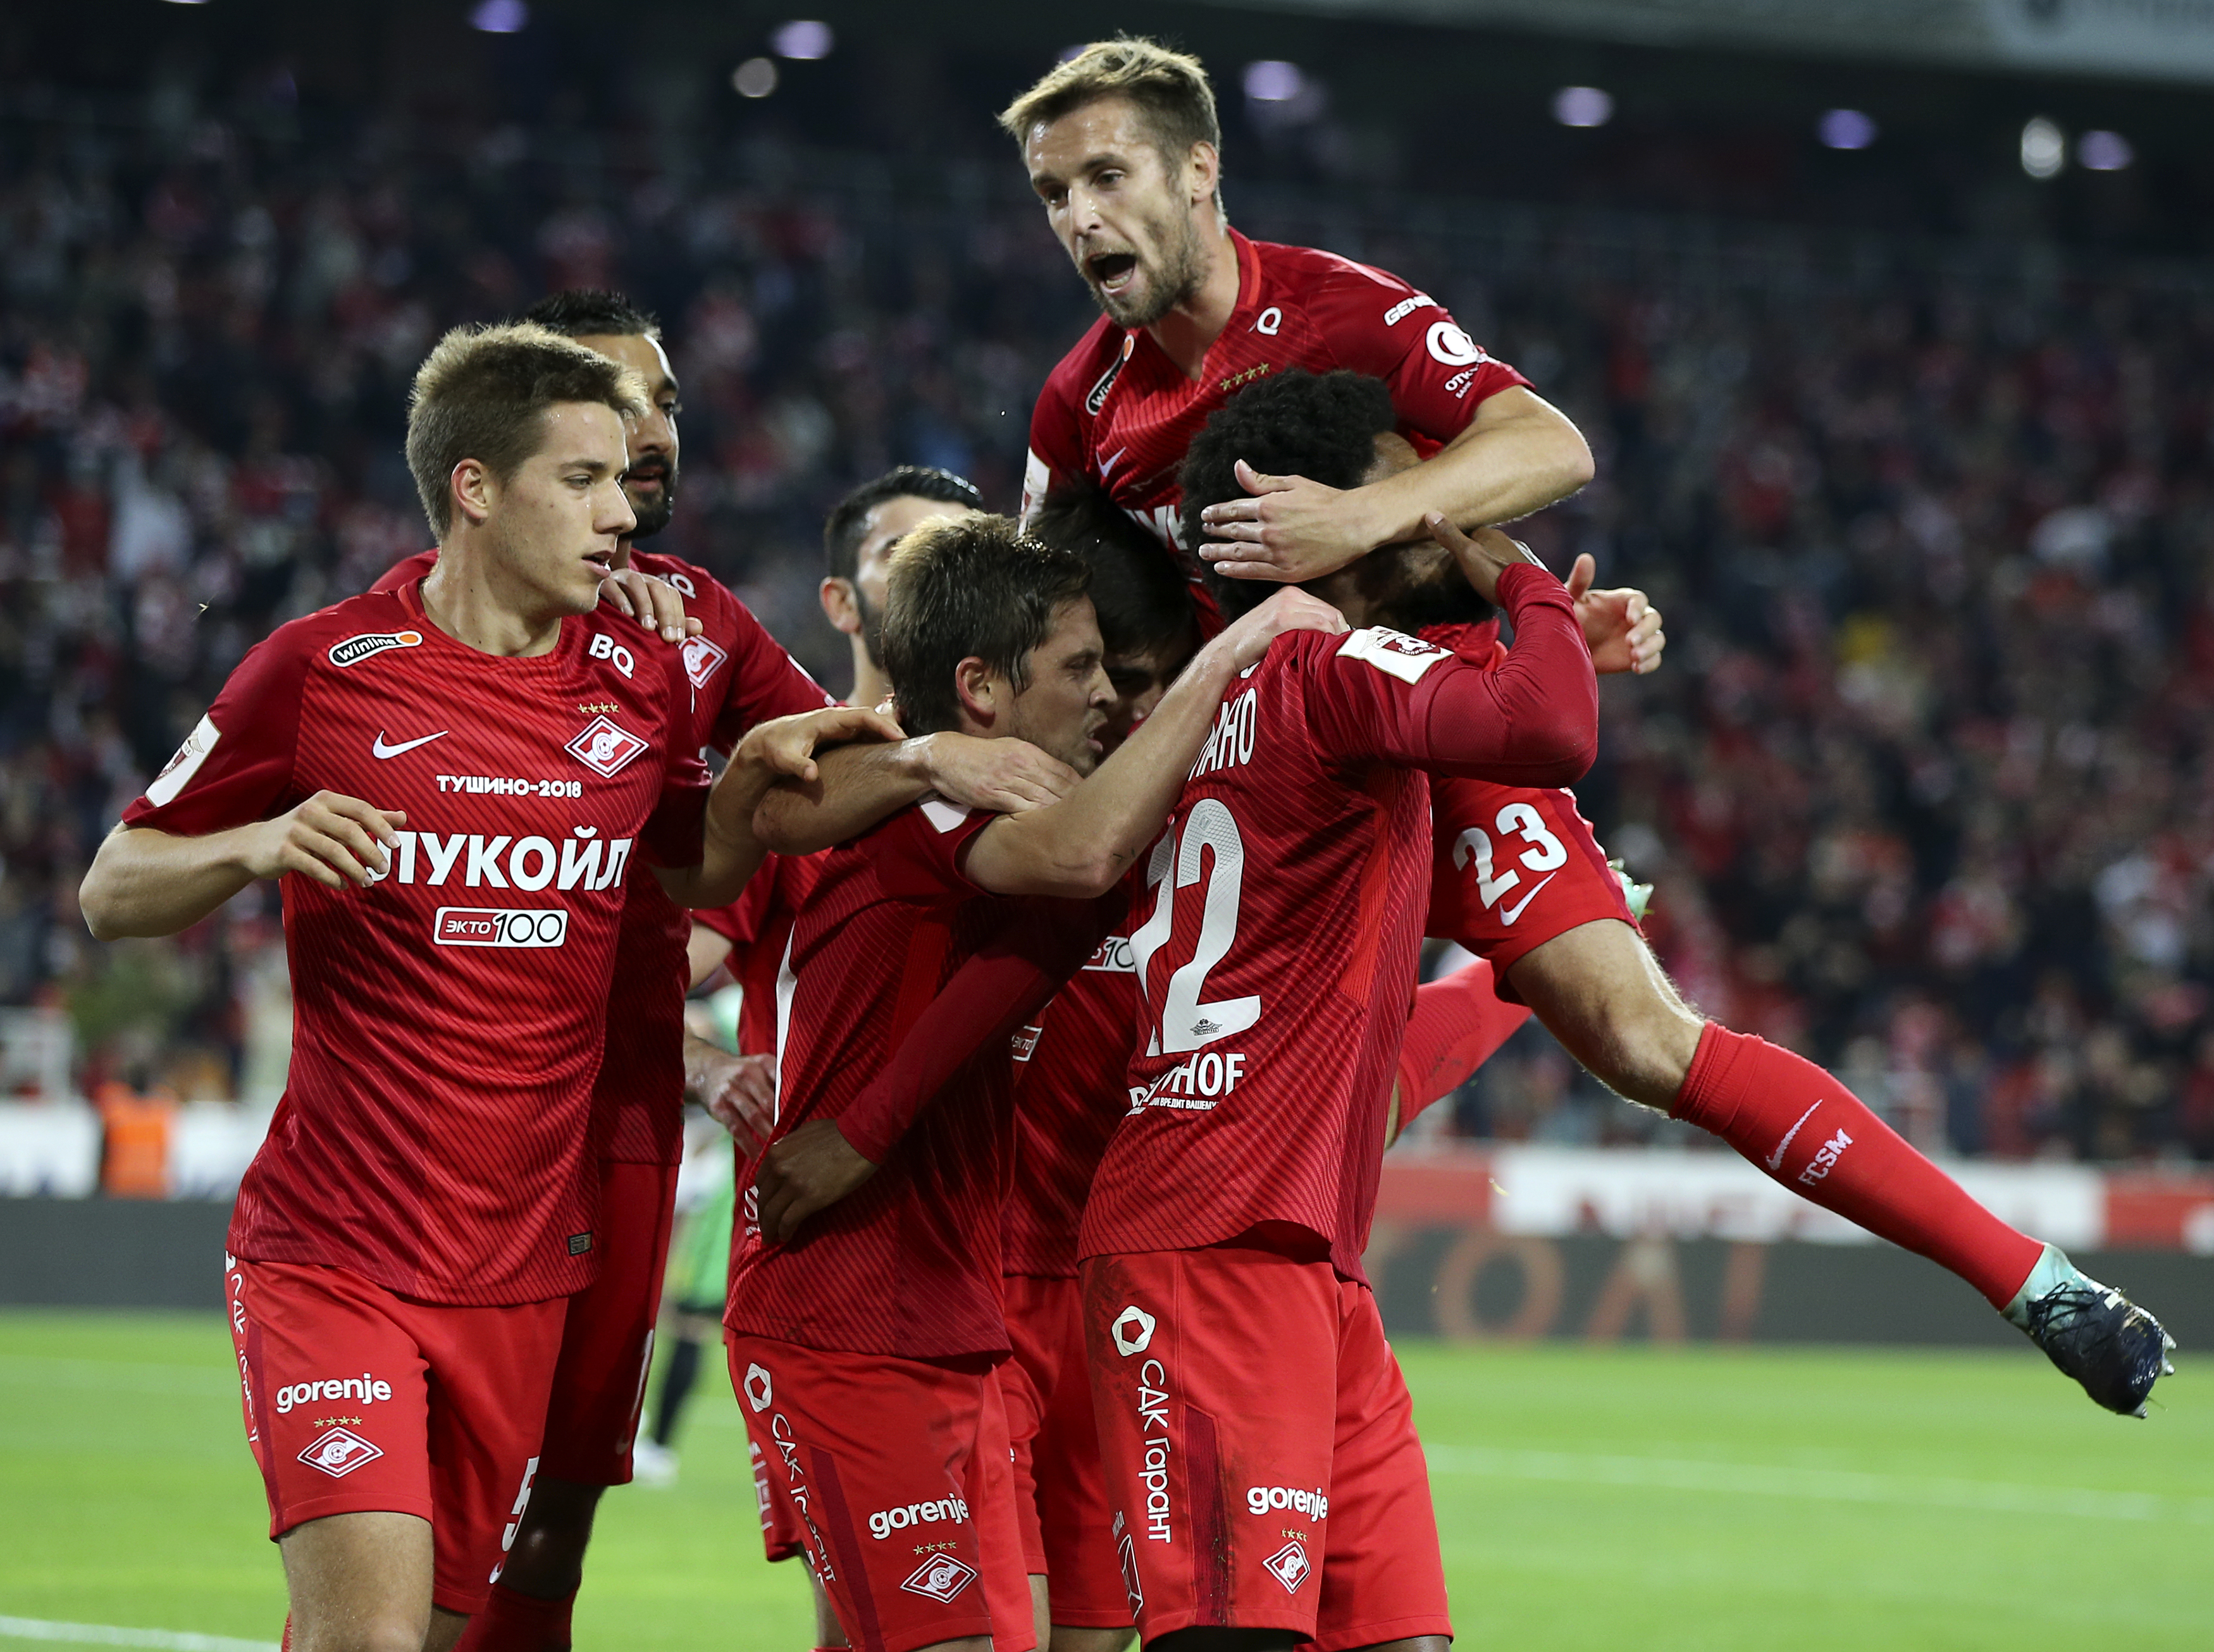 Soi kèo, dự đoán Spartak Moscow	vs Legia Warszawa